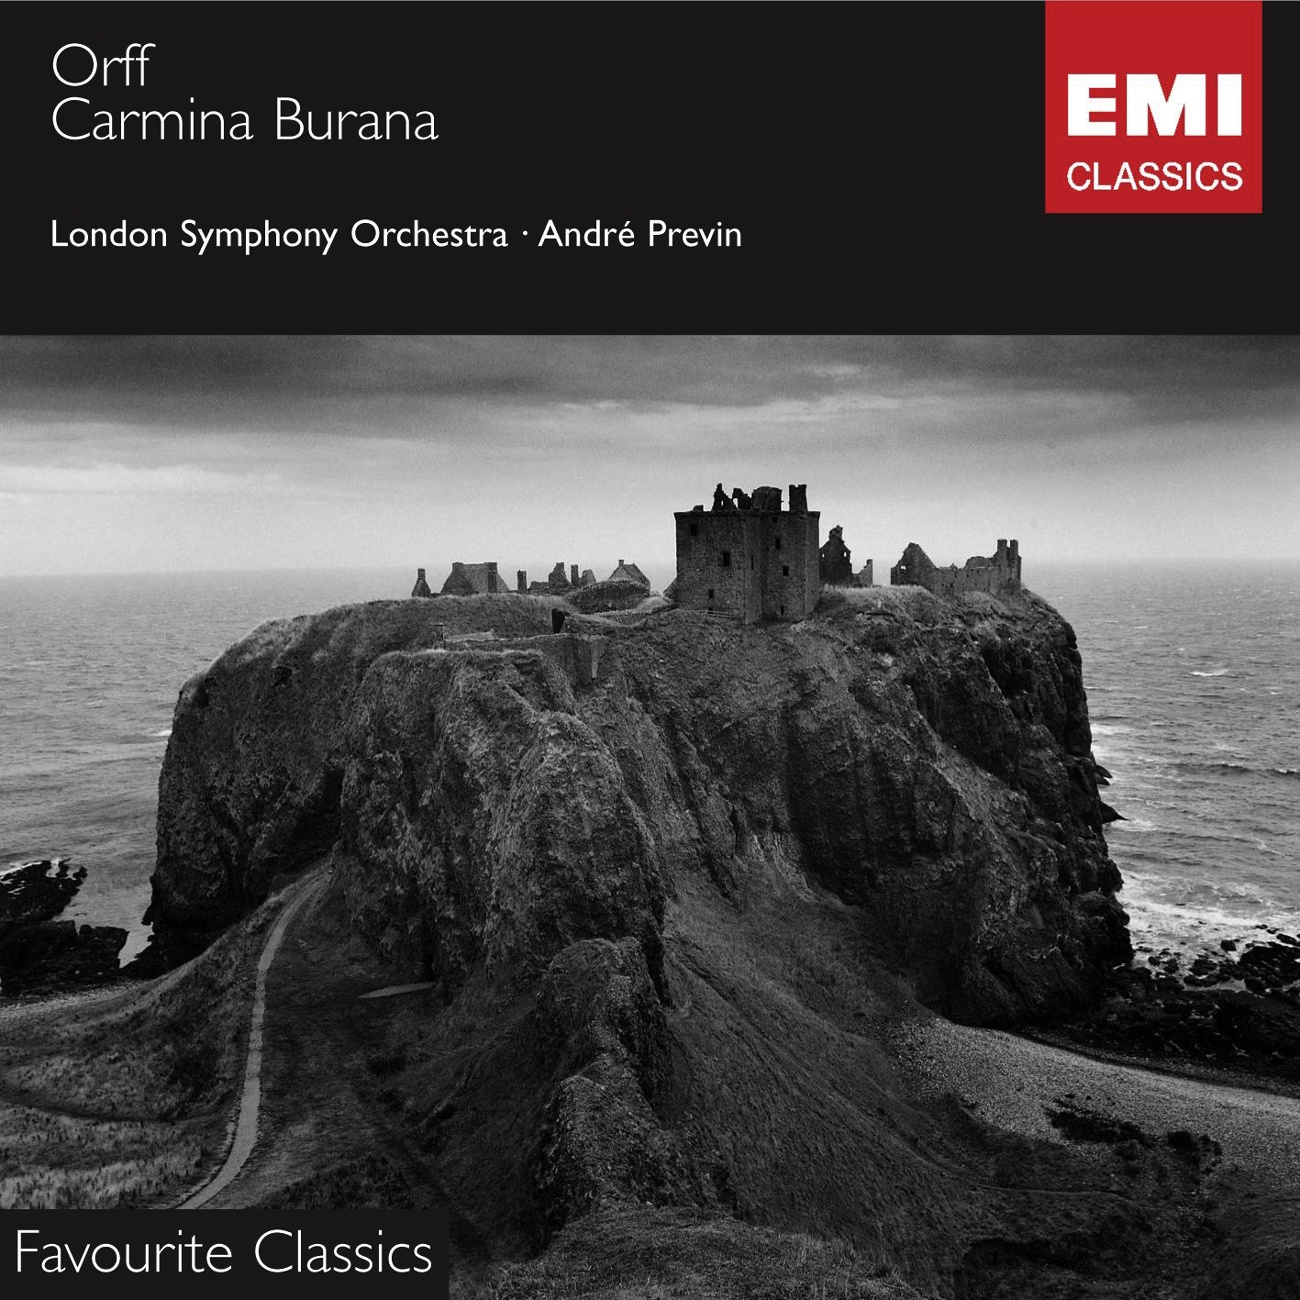 Carmina Burana - Cantiones profanae (1997 Digital Remaster), I - Primo vere: No. 3 - Veris Ieta facies